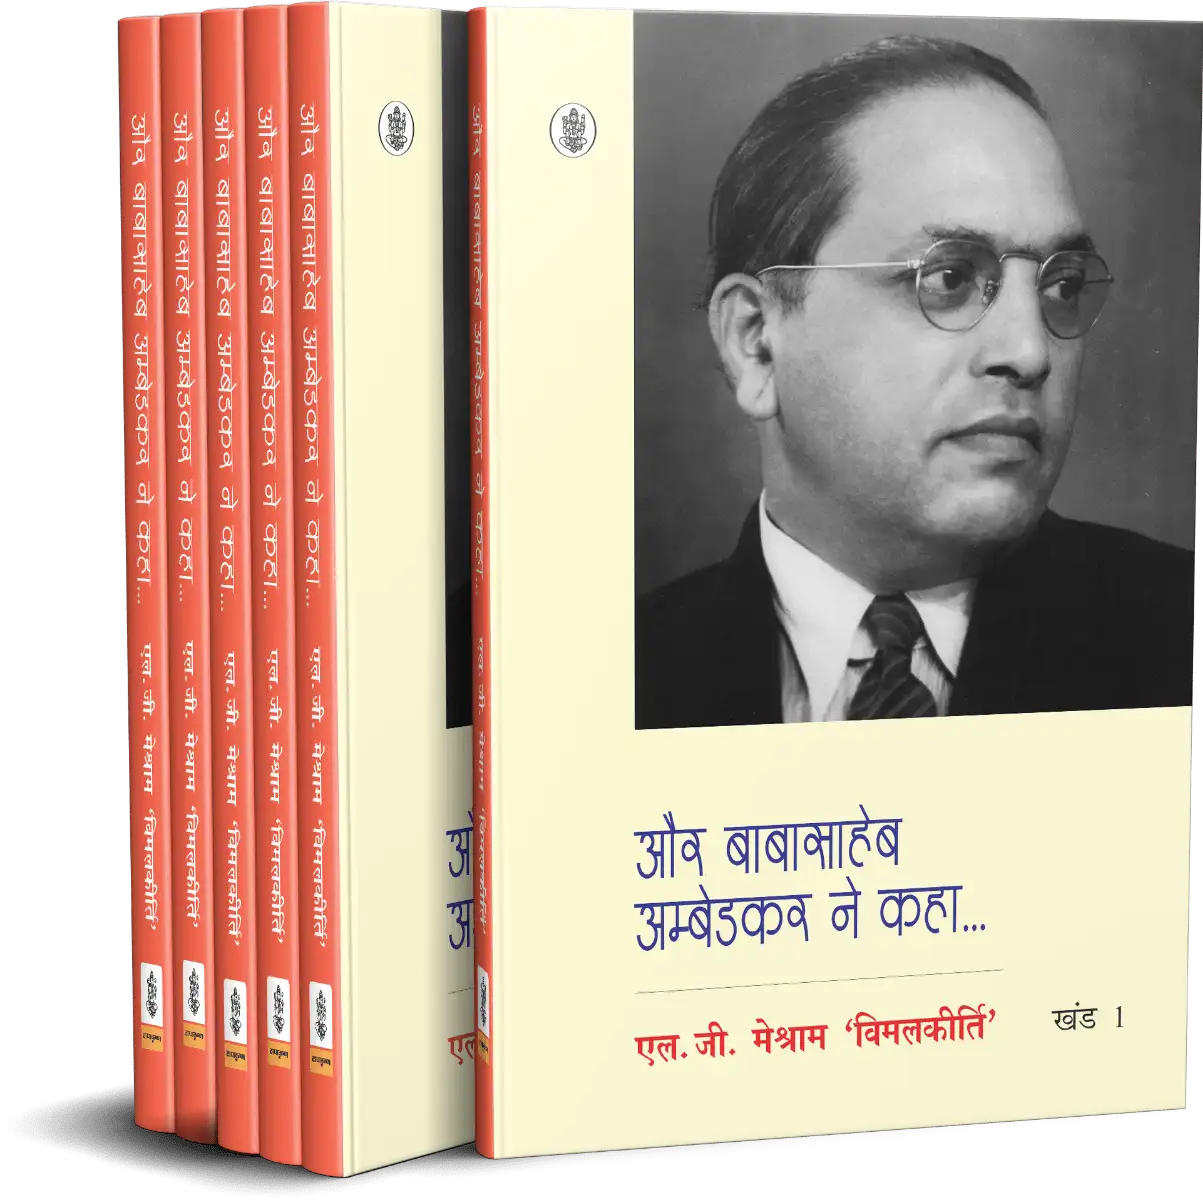 Aur Babasaheb Ambedkar Ne Kaha : Vols. 1-6